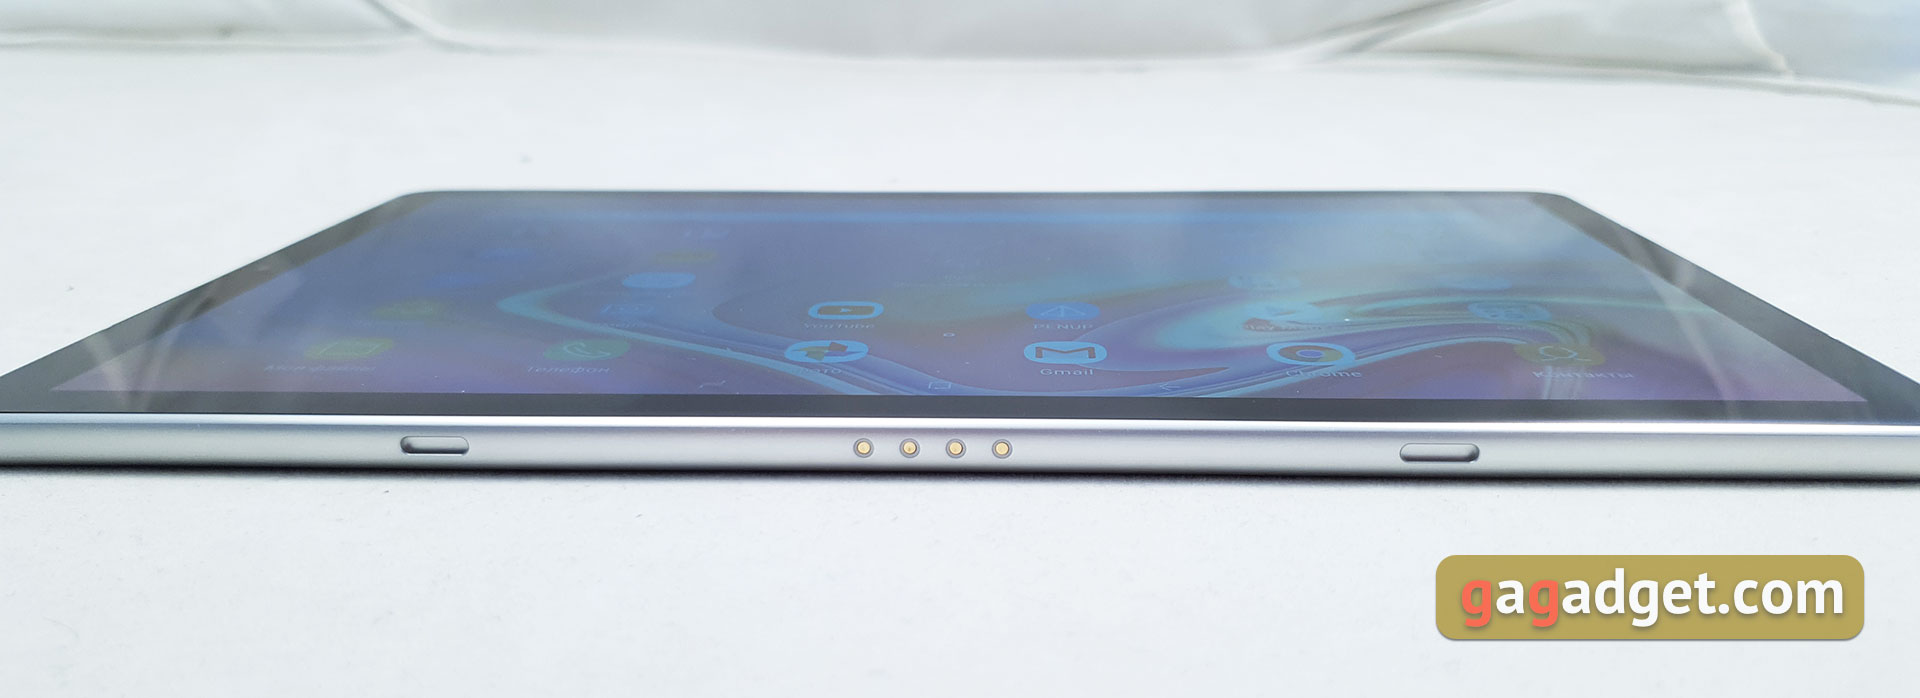 Обзор Samsung Galaxy Tab S4: флагманский планшет с действительно интересными фишками-15